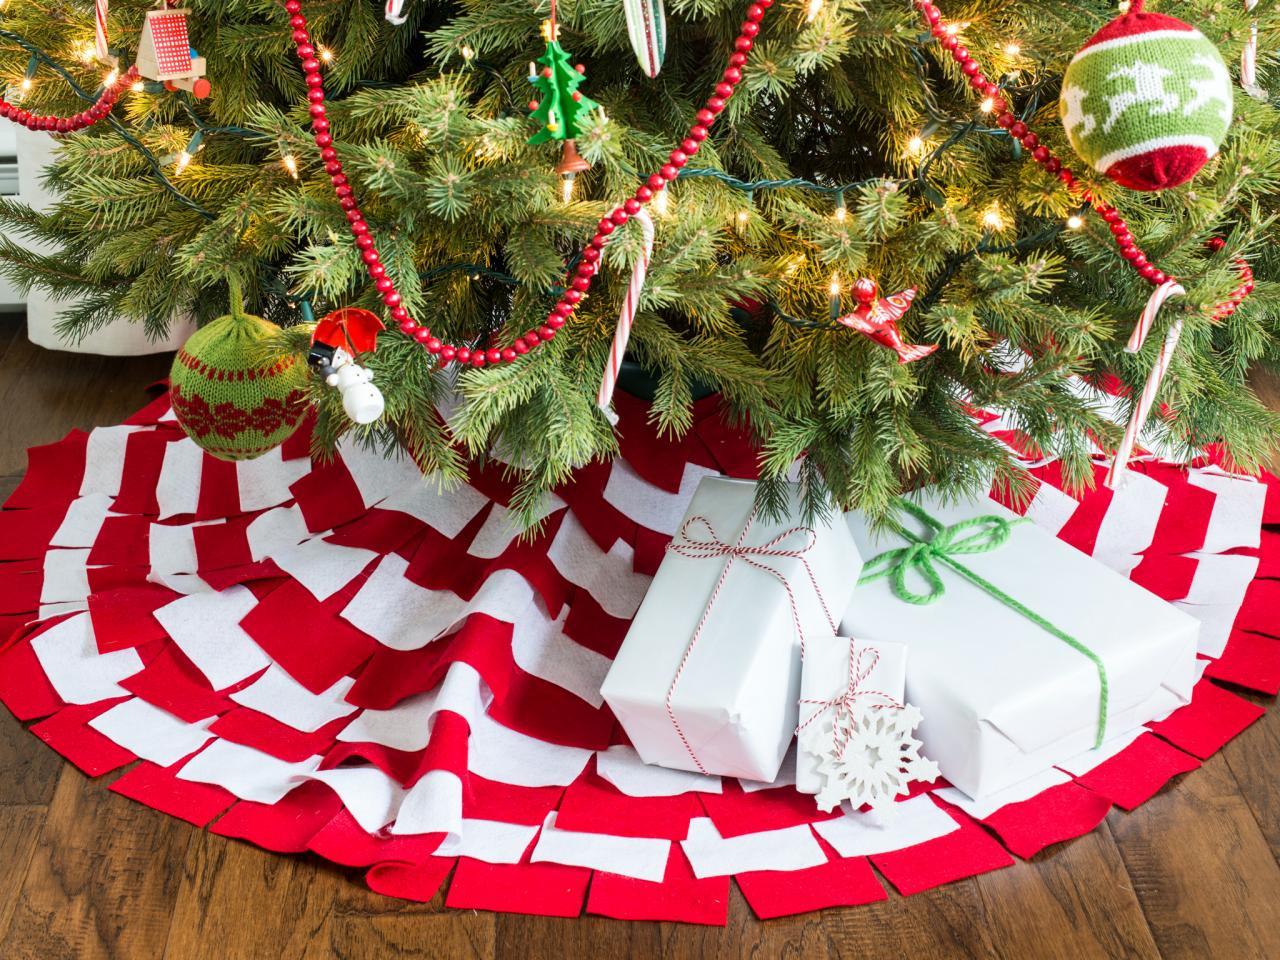 DIY Christmas Tree Skirts
 Top 25 DIY Christmas Tree Skirts Christmas Celebration